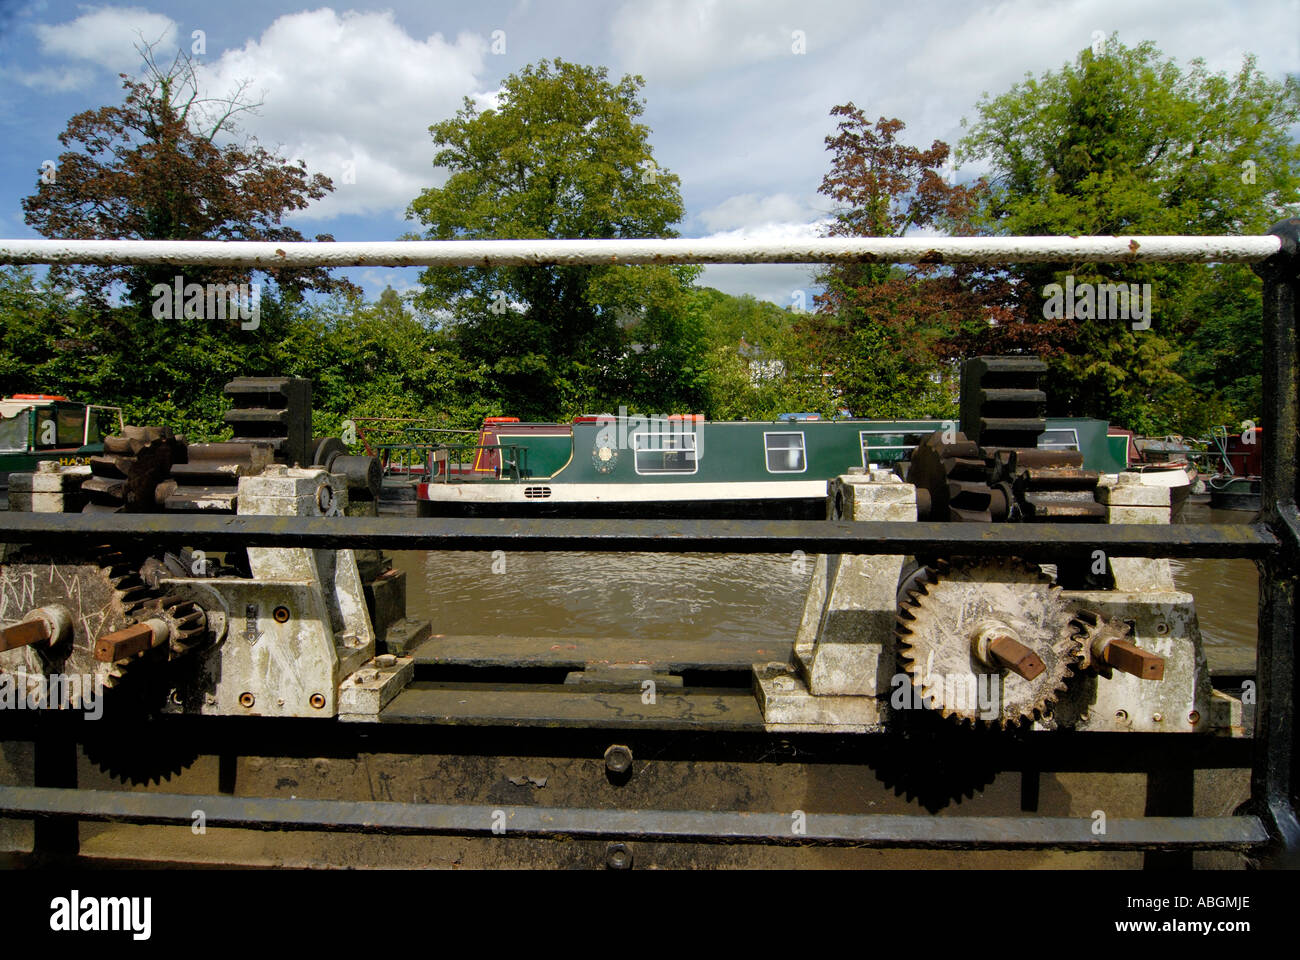 Nahaufnahme der Schleuse Mechanismus auf dem Fluss Wey Guildford. Kanal Narrowboat im Hintergrund. Stockfoto